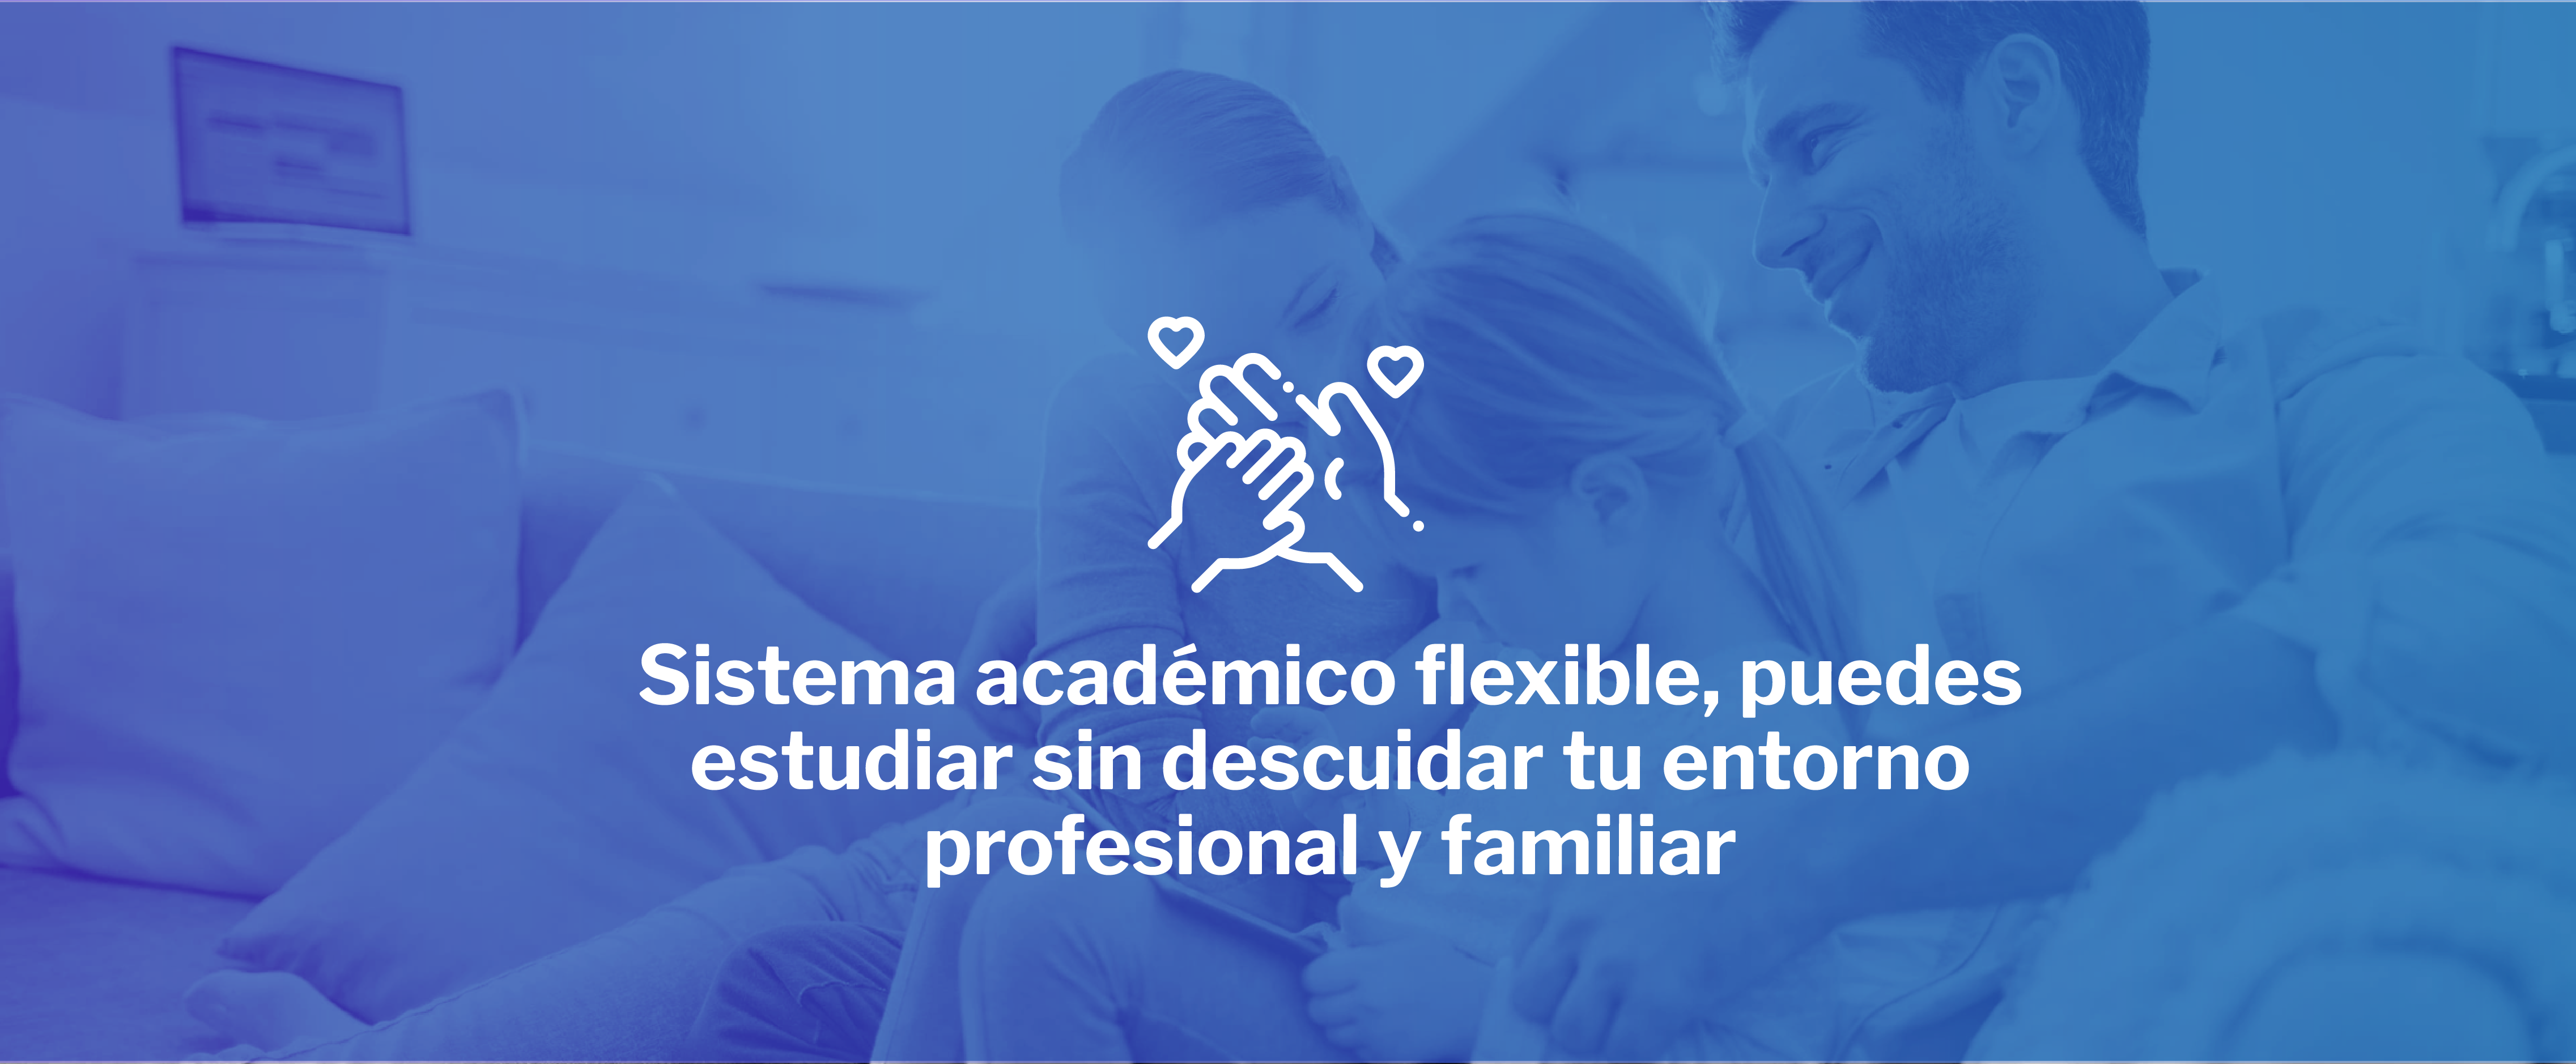 Sistema academico flexiblw, puedes estudiar sin descuidar tu entorno profesional y familiar